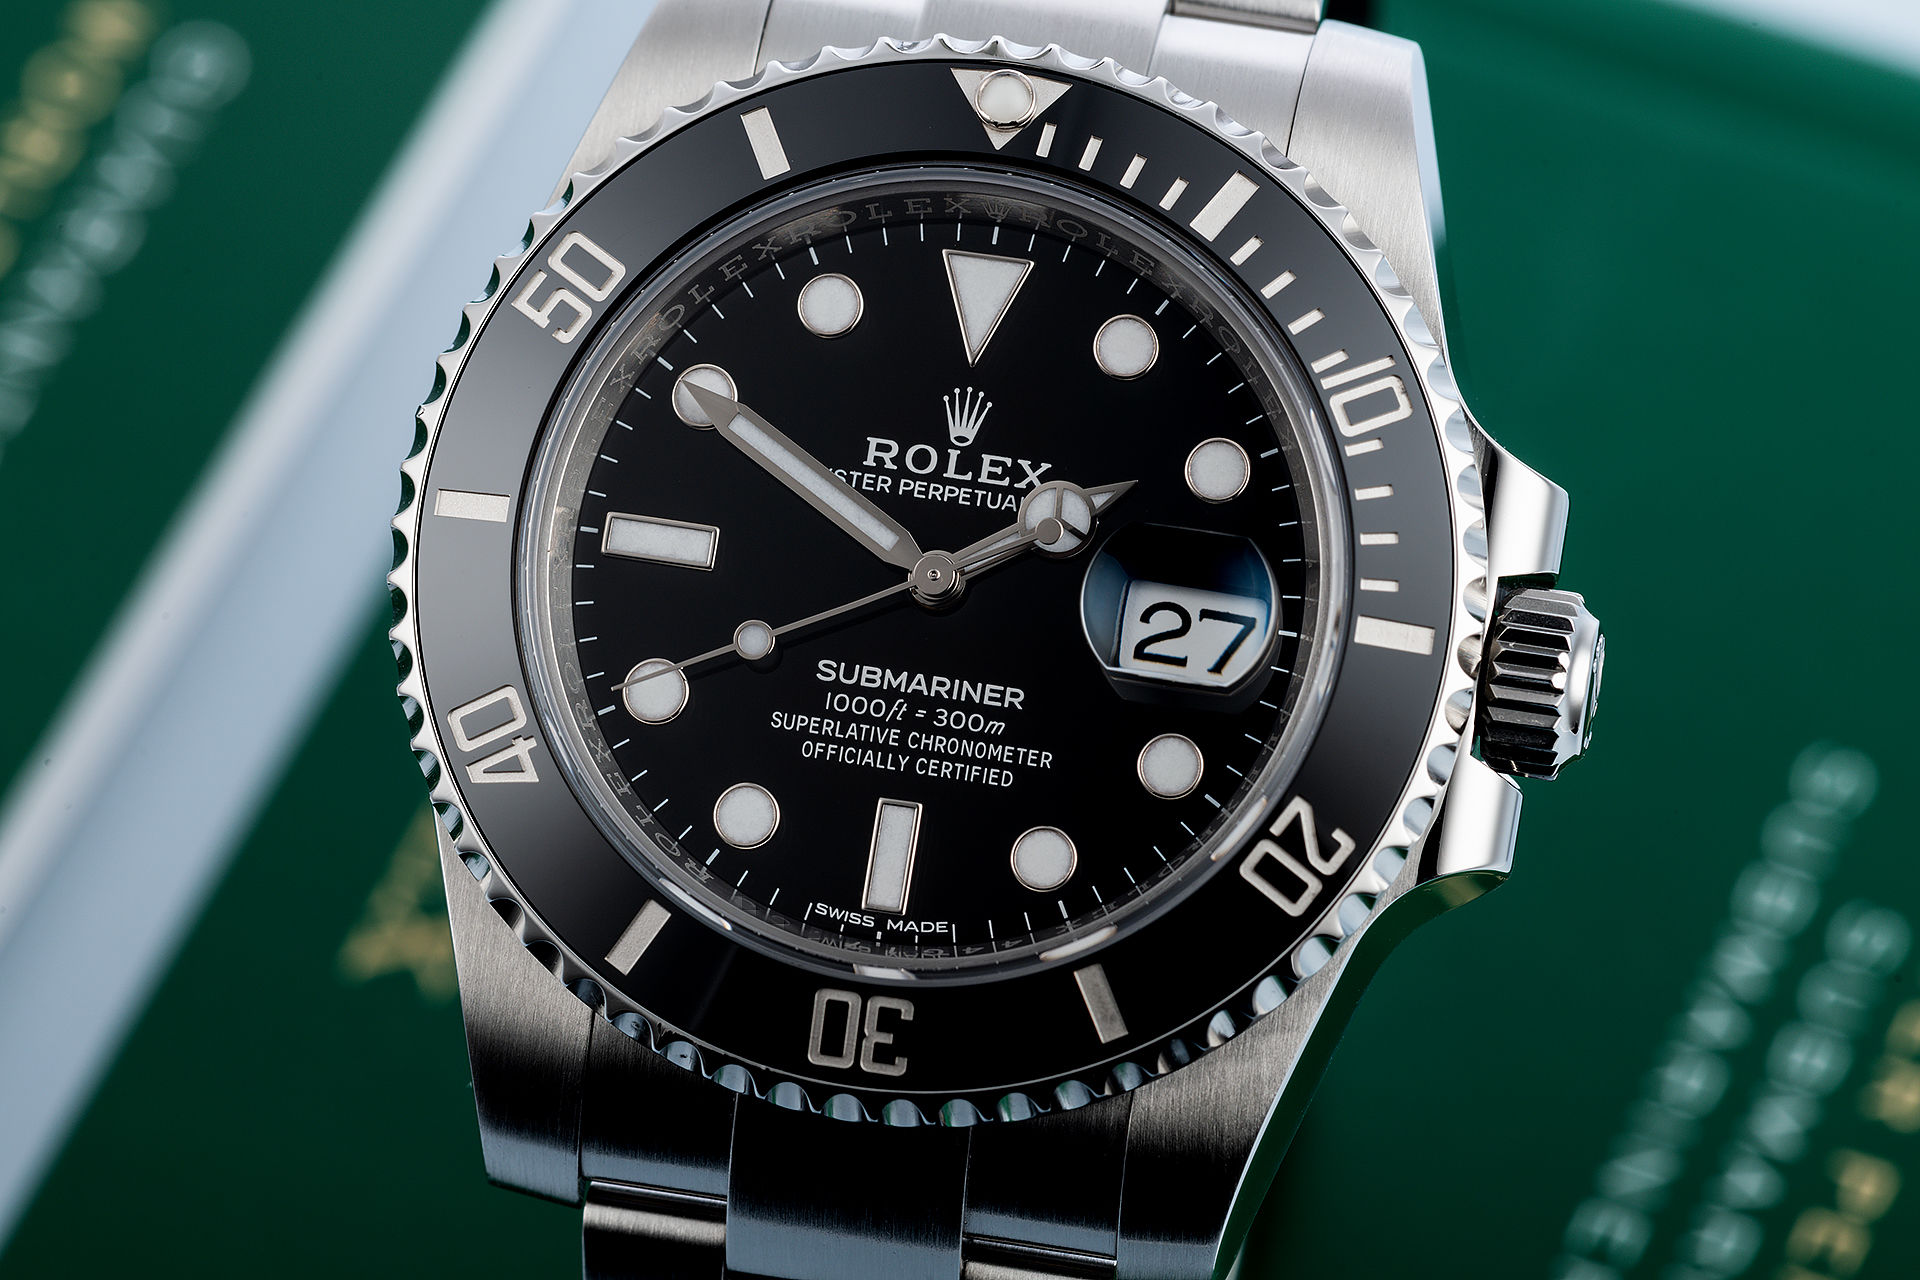 ref 116610LN | Full Set 'Under Rolex Warranty' | Rolex Submariner Date